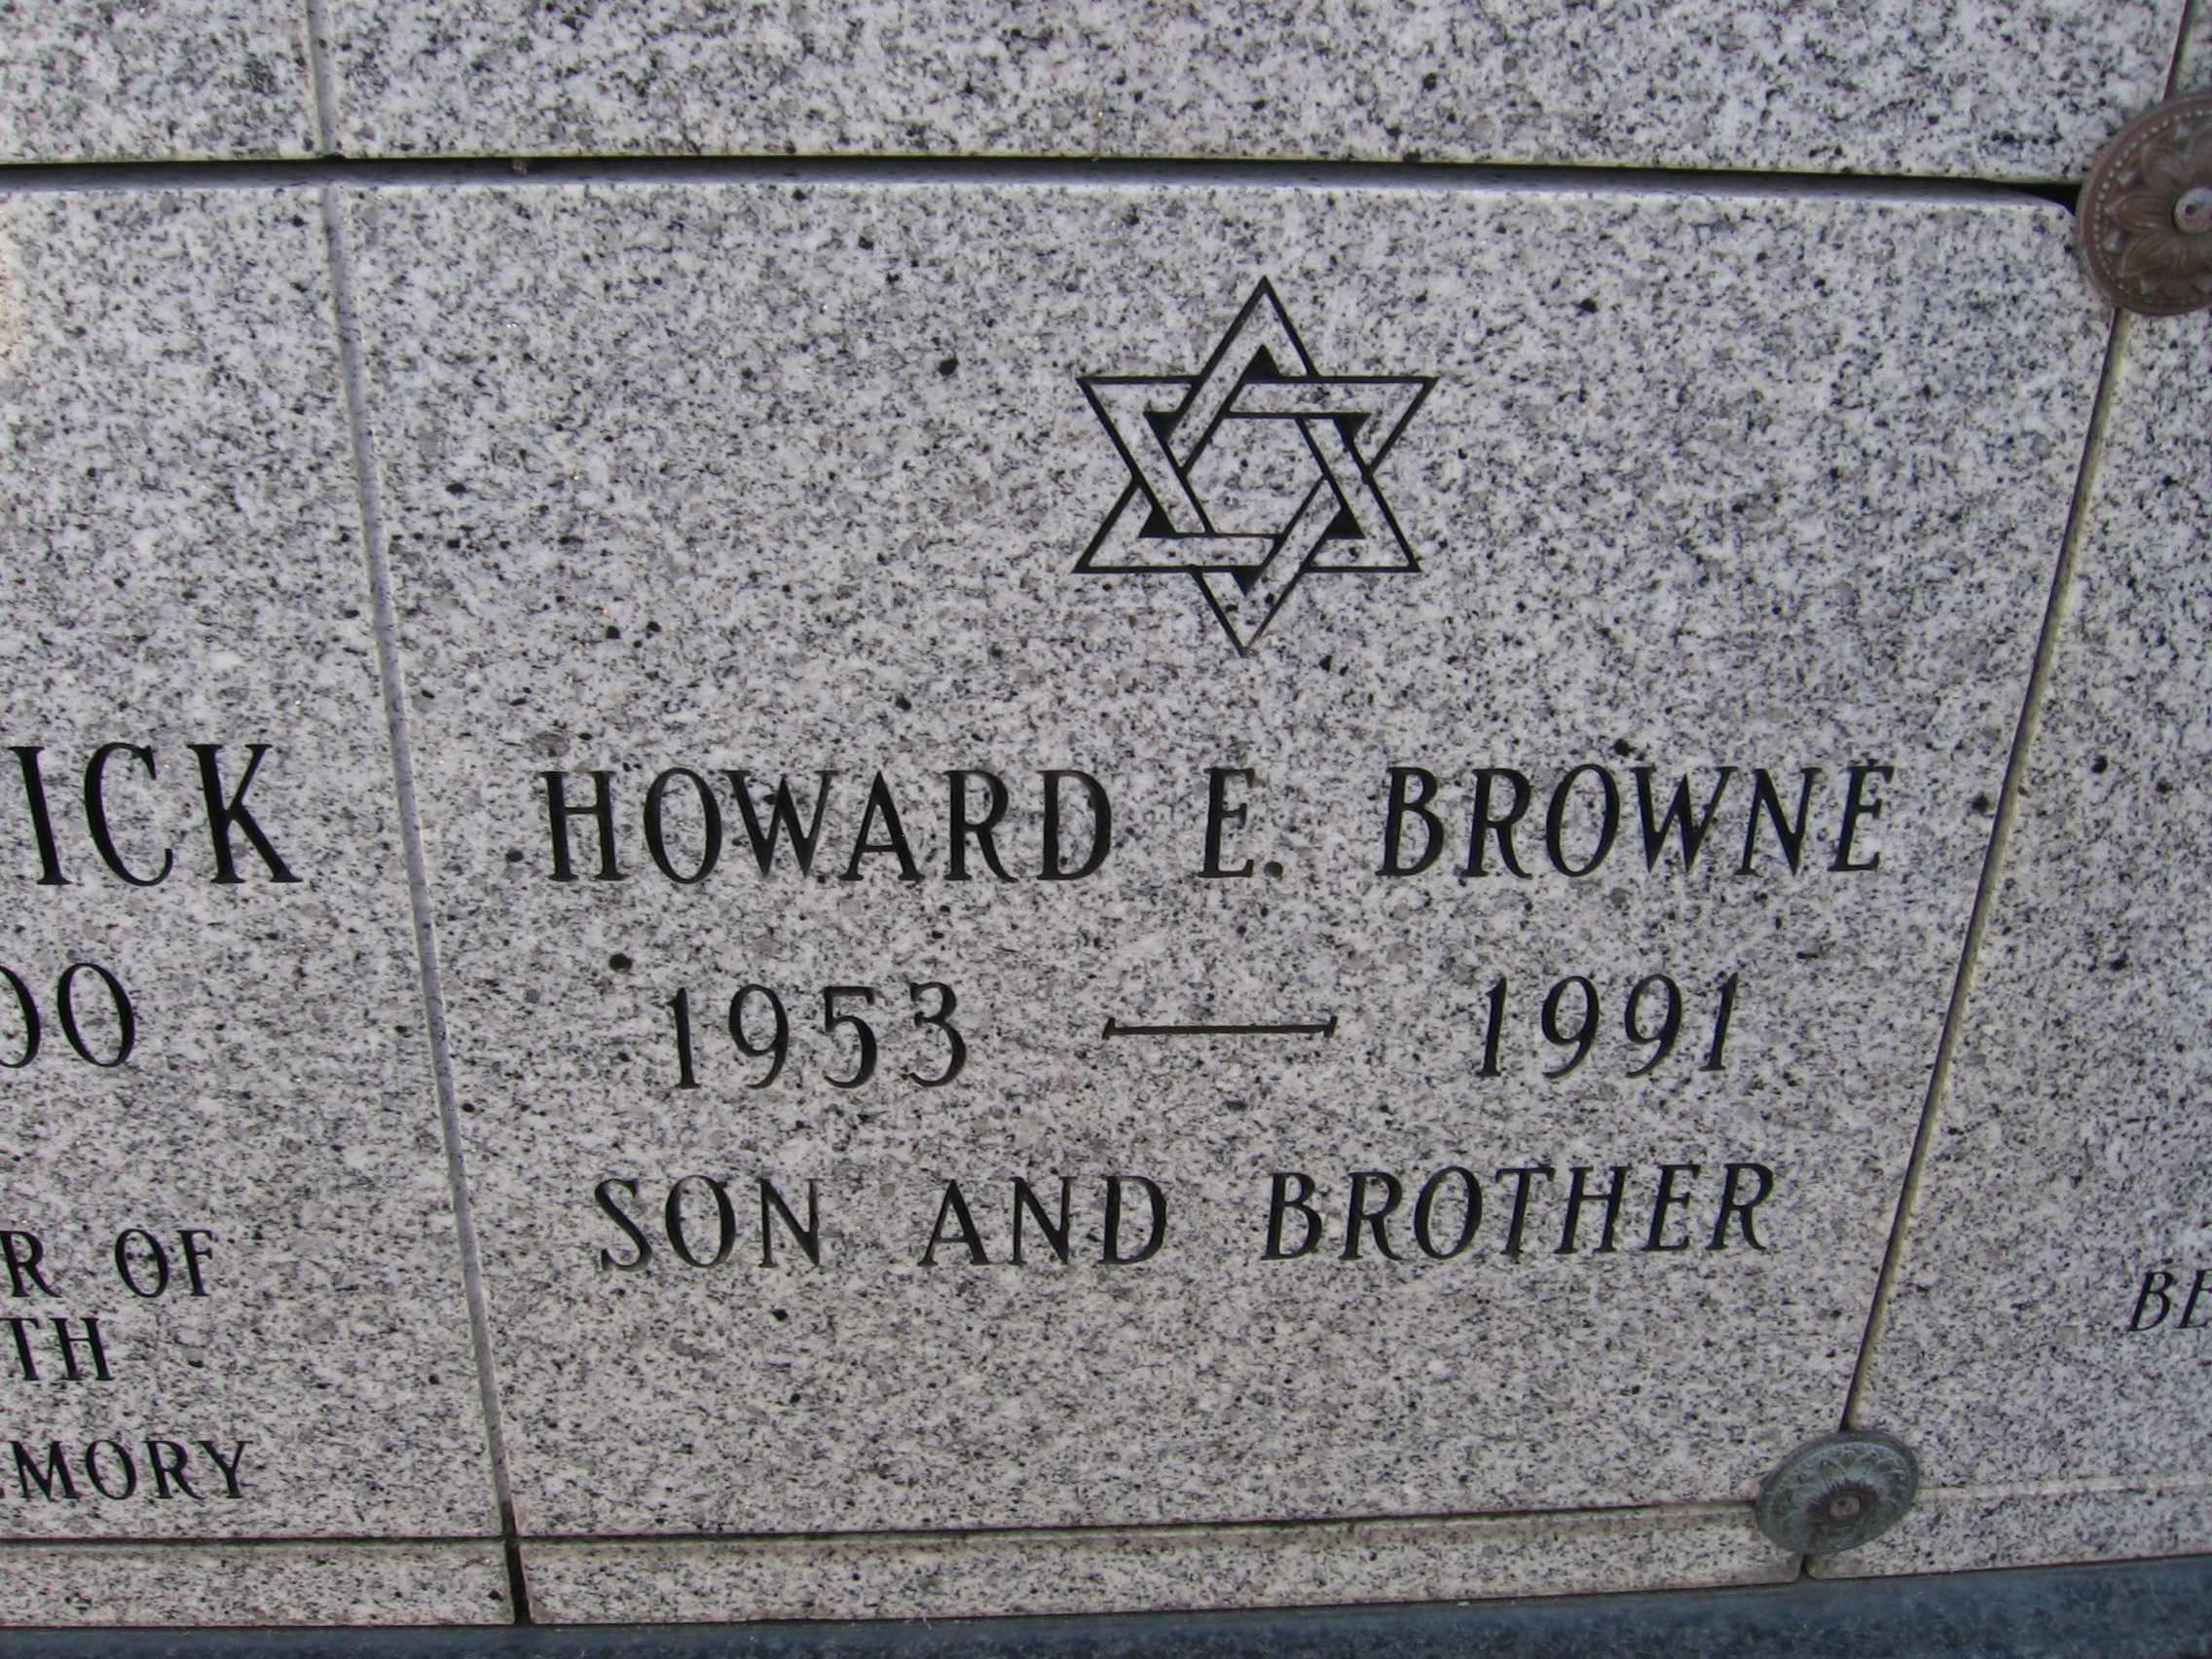 Howard E Browne